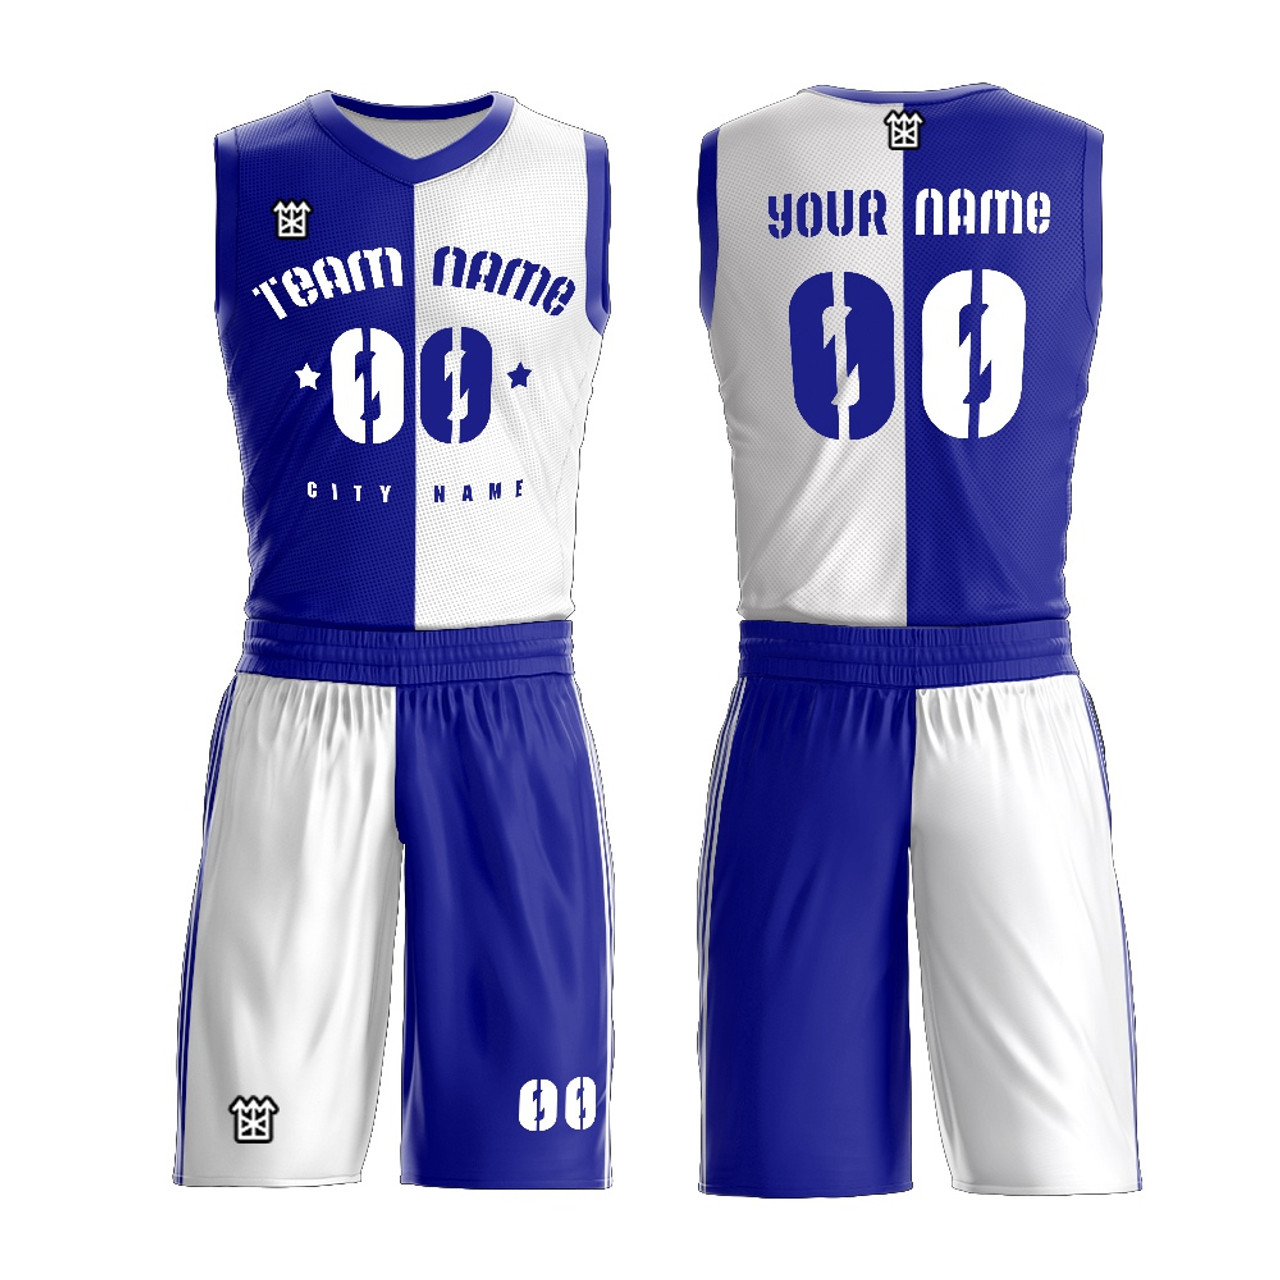 unique best sublimation basketball jersey design 2019